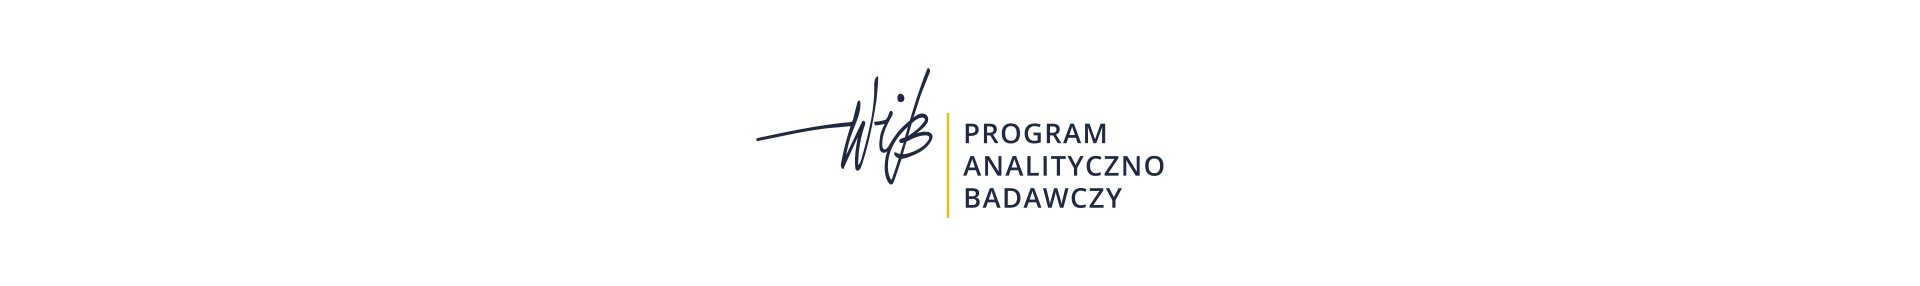 Program Analityczno-Badawczy WIB